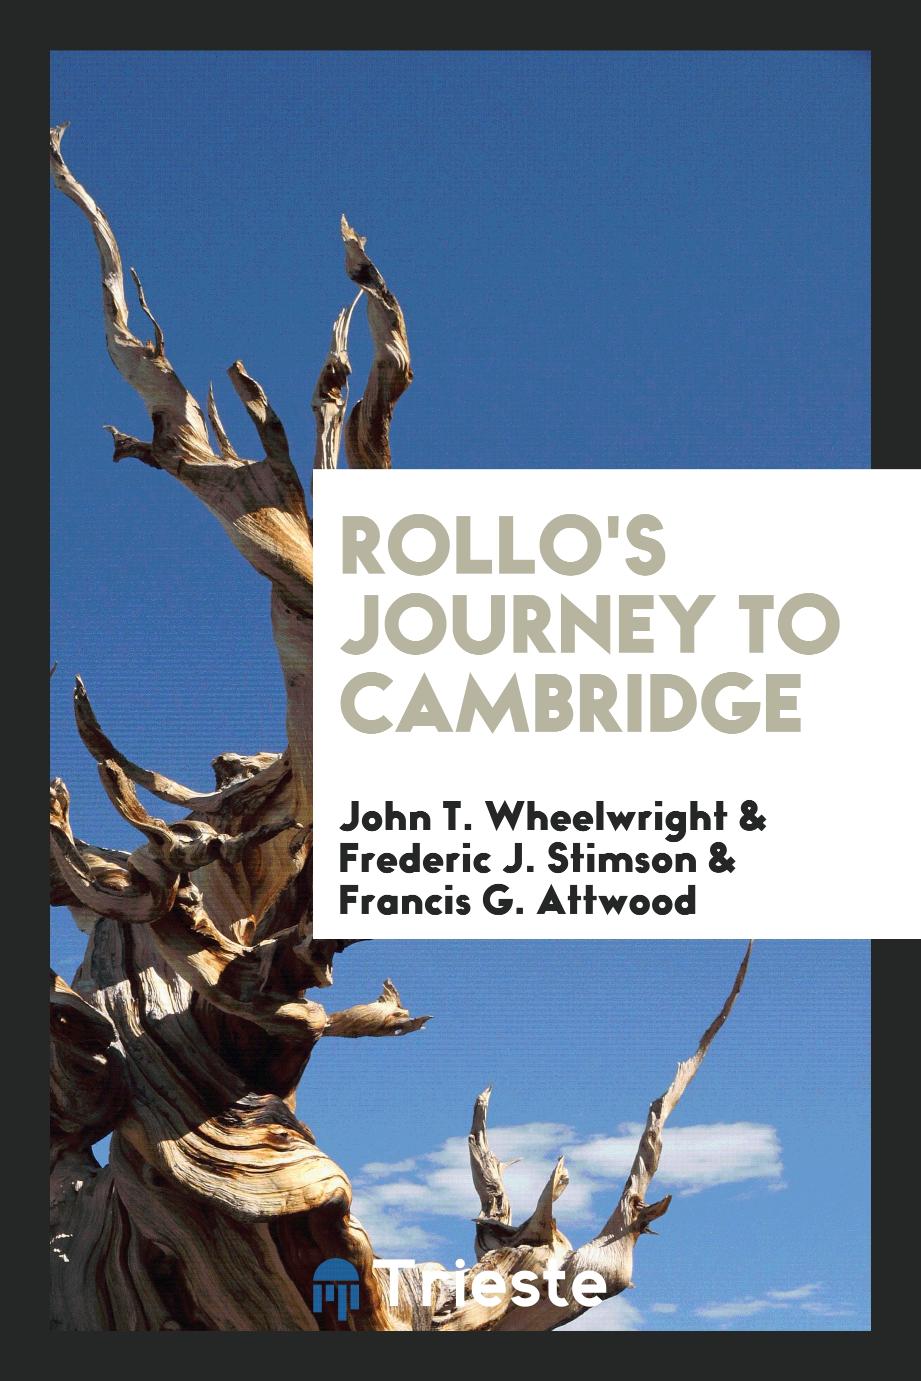 Rollo's journey to Cambridge